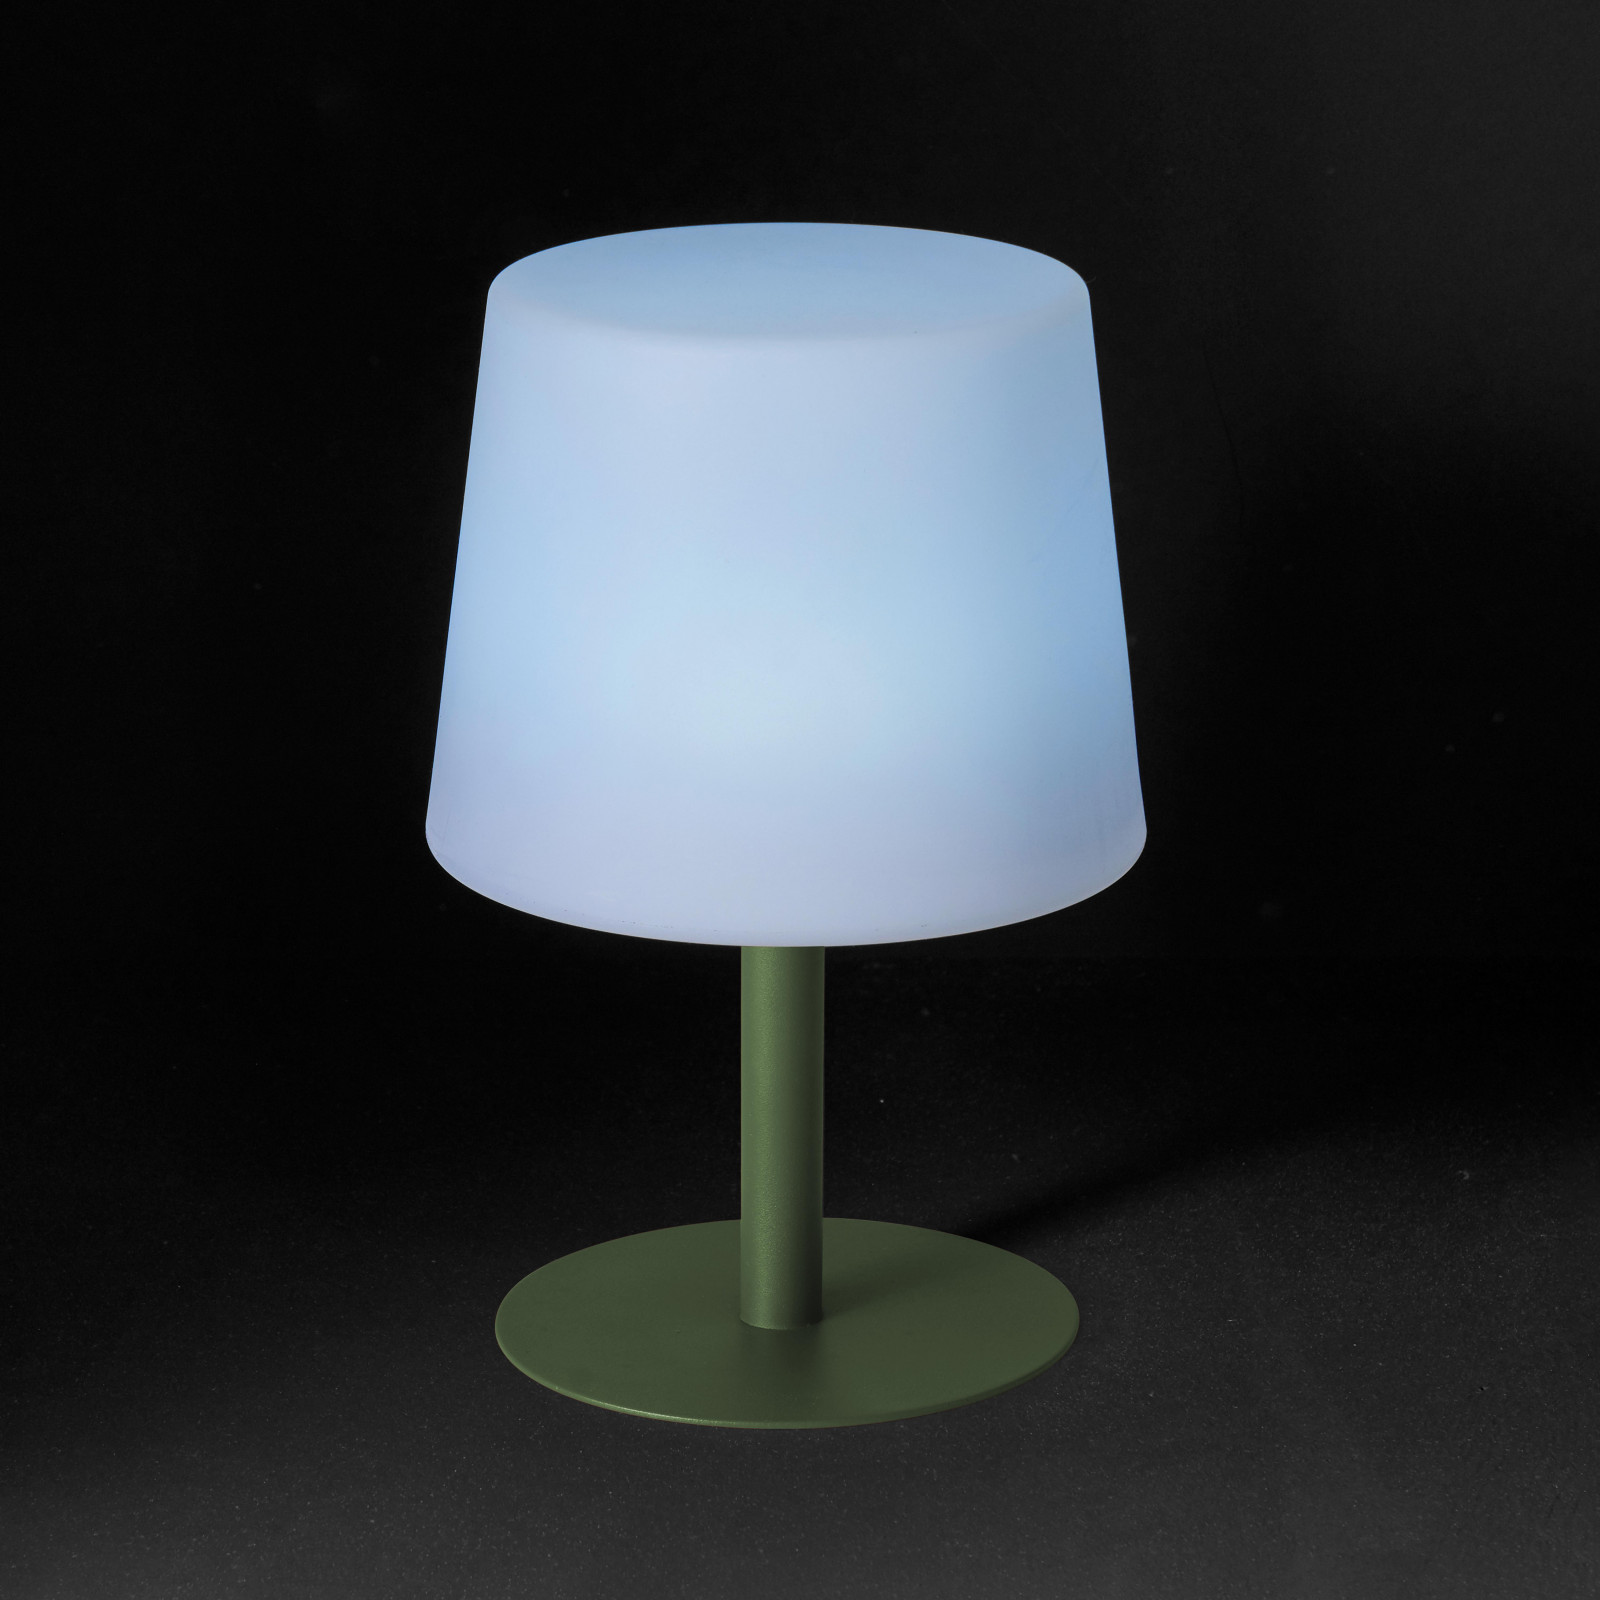 https://www.oviala.com/32872-full_default/mini-lampe-de-table-a-led-30-cm.jpg?v=1657552687